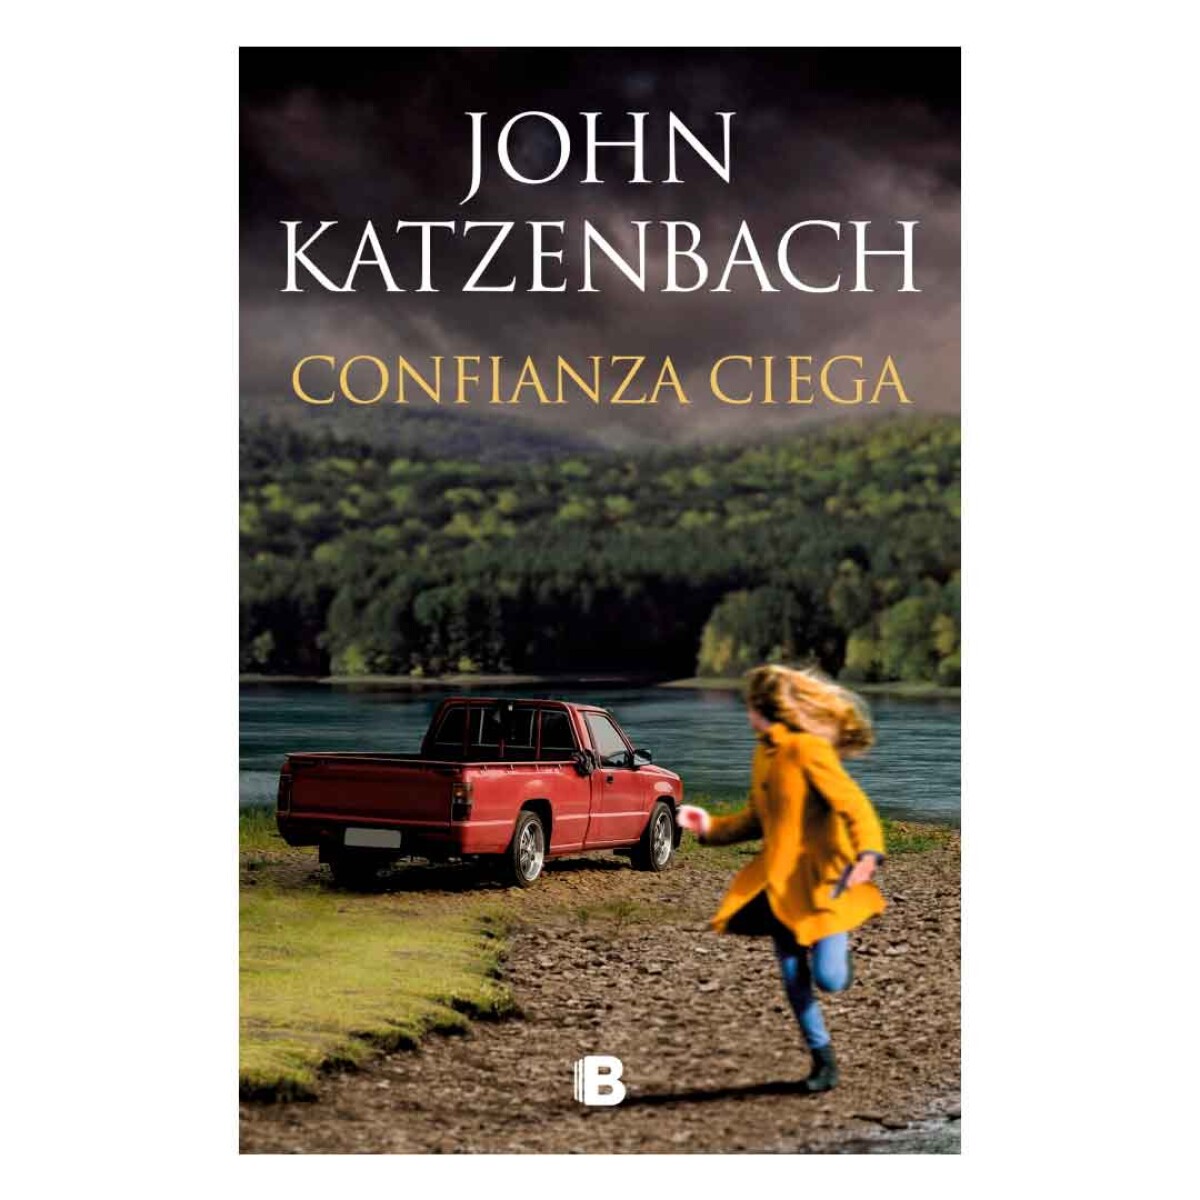 Libro Confianza ciega by John Katzenbach - 001 